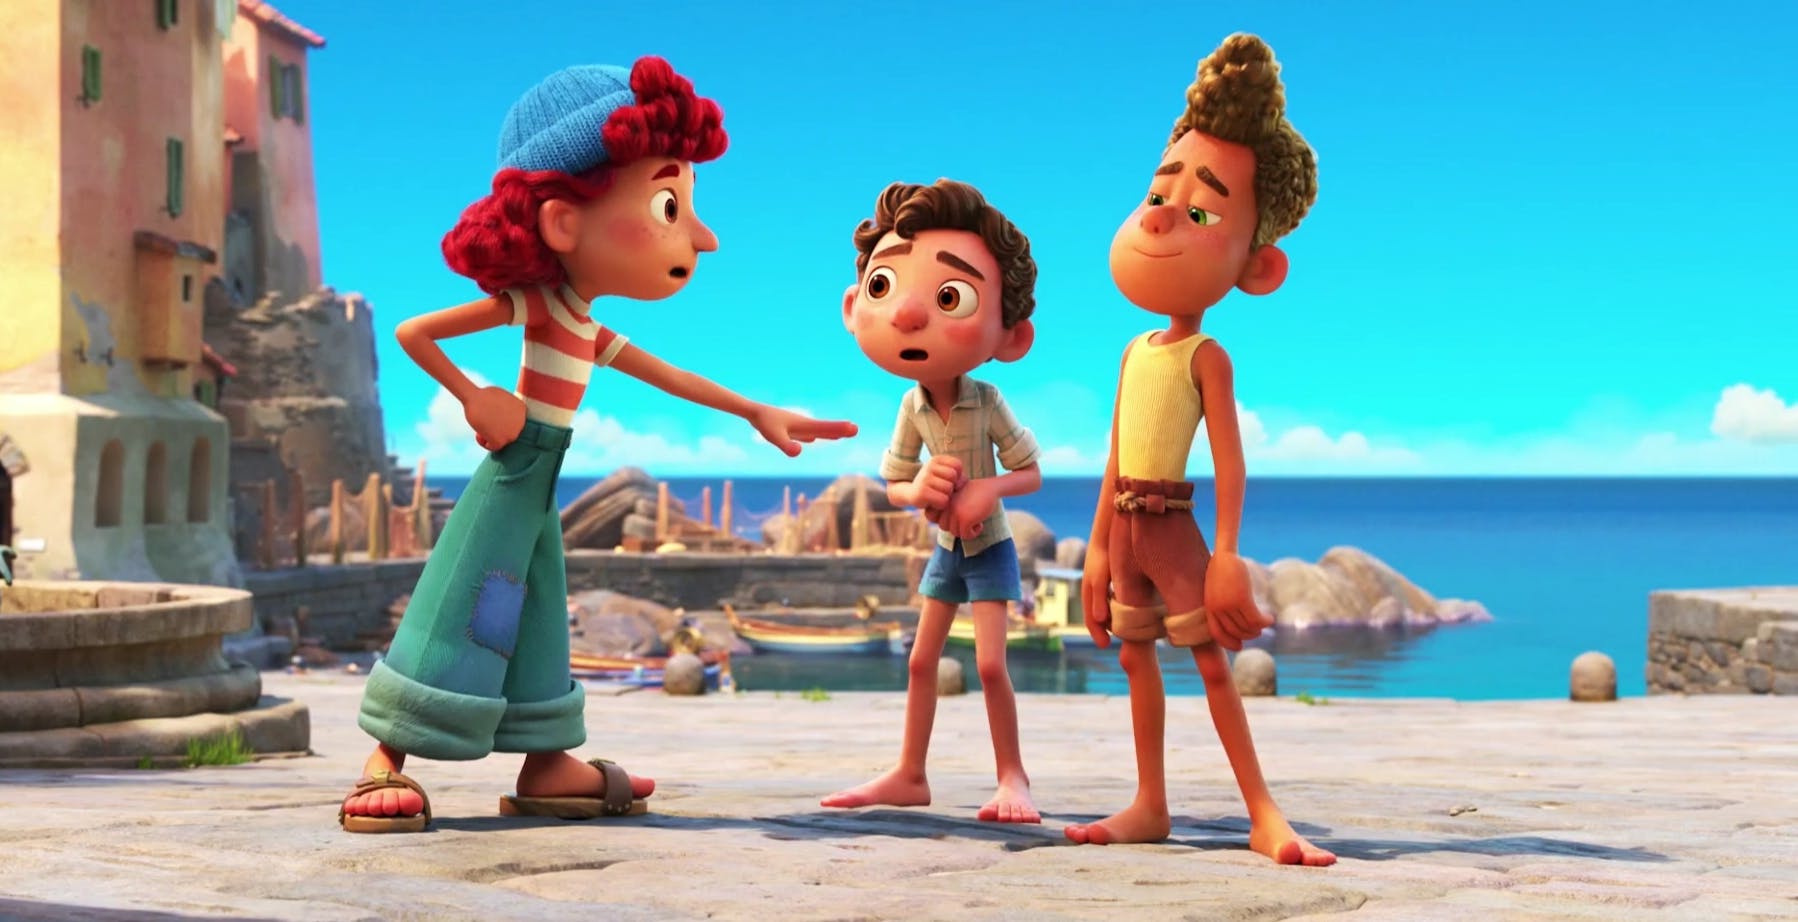 È online il primo trailer di "Luca", il nuovo film Pixar ambientato in Liguria